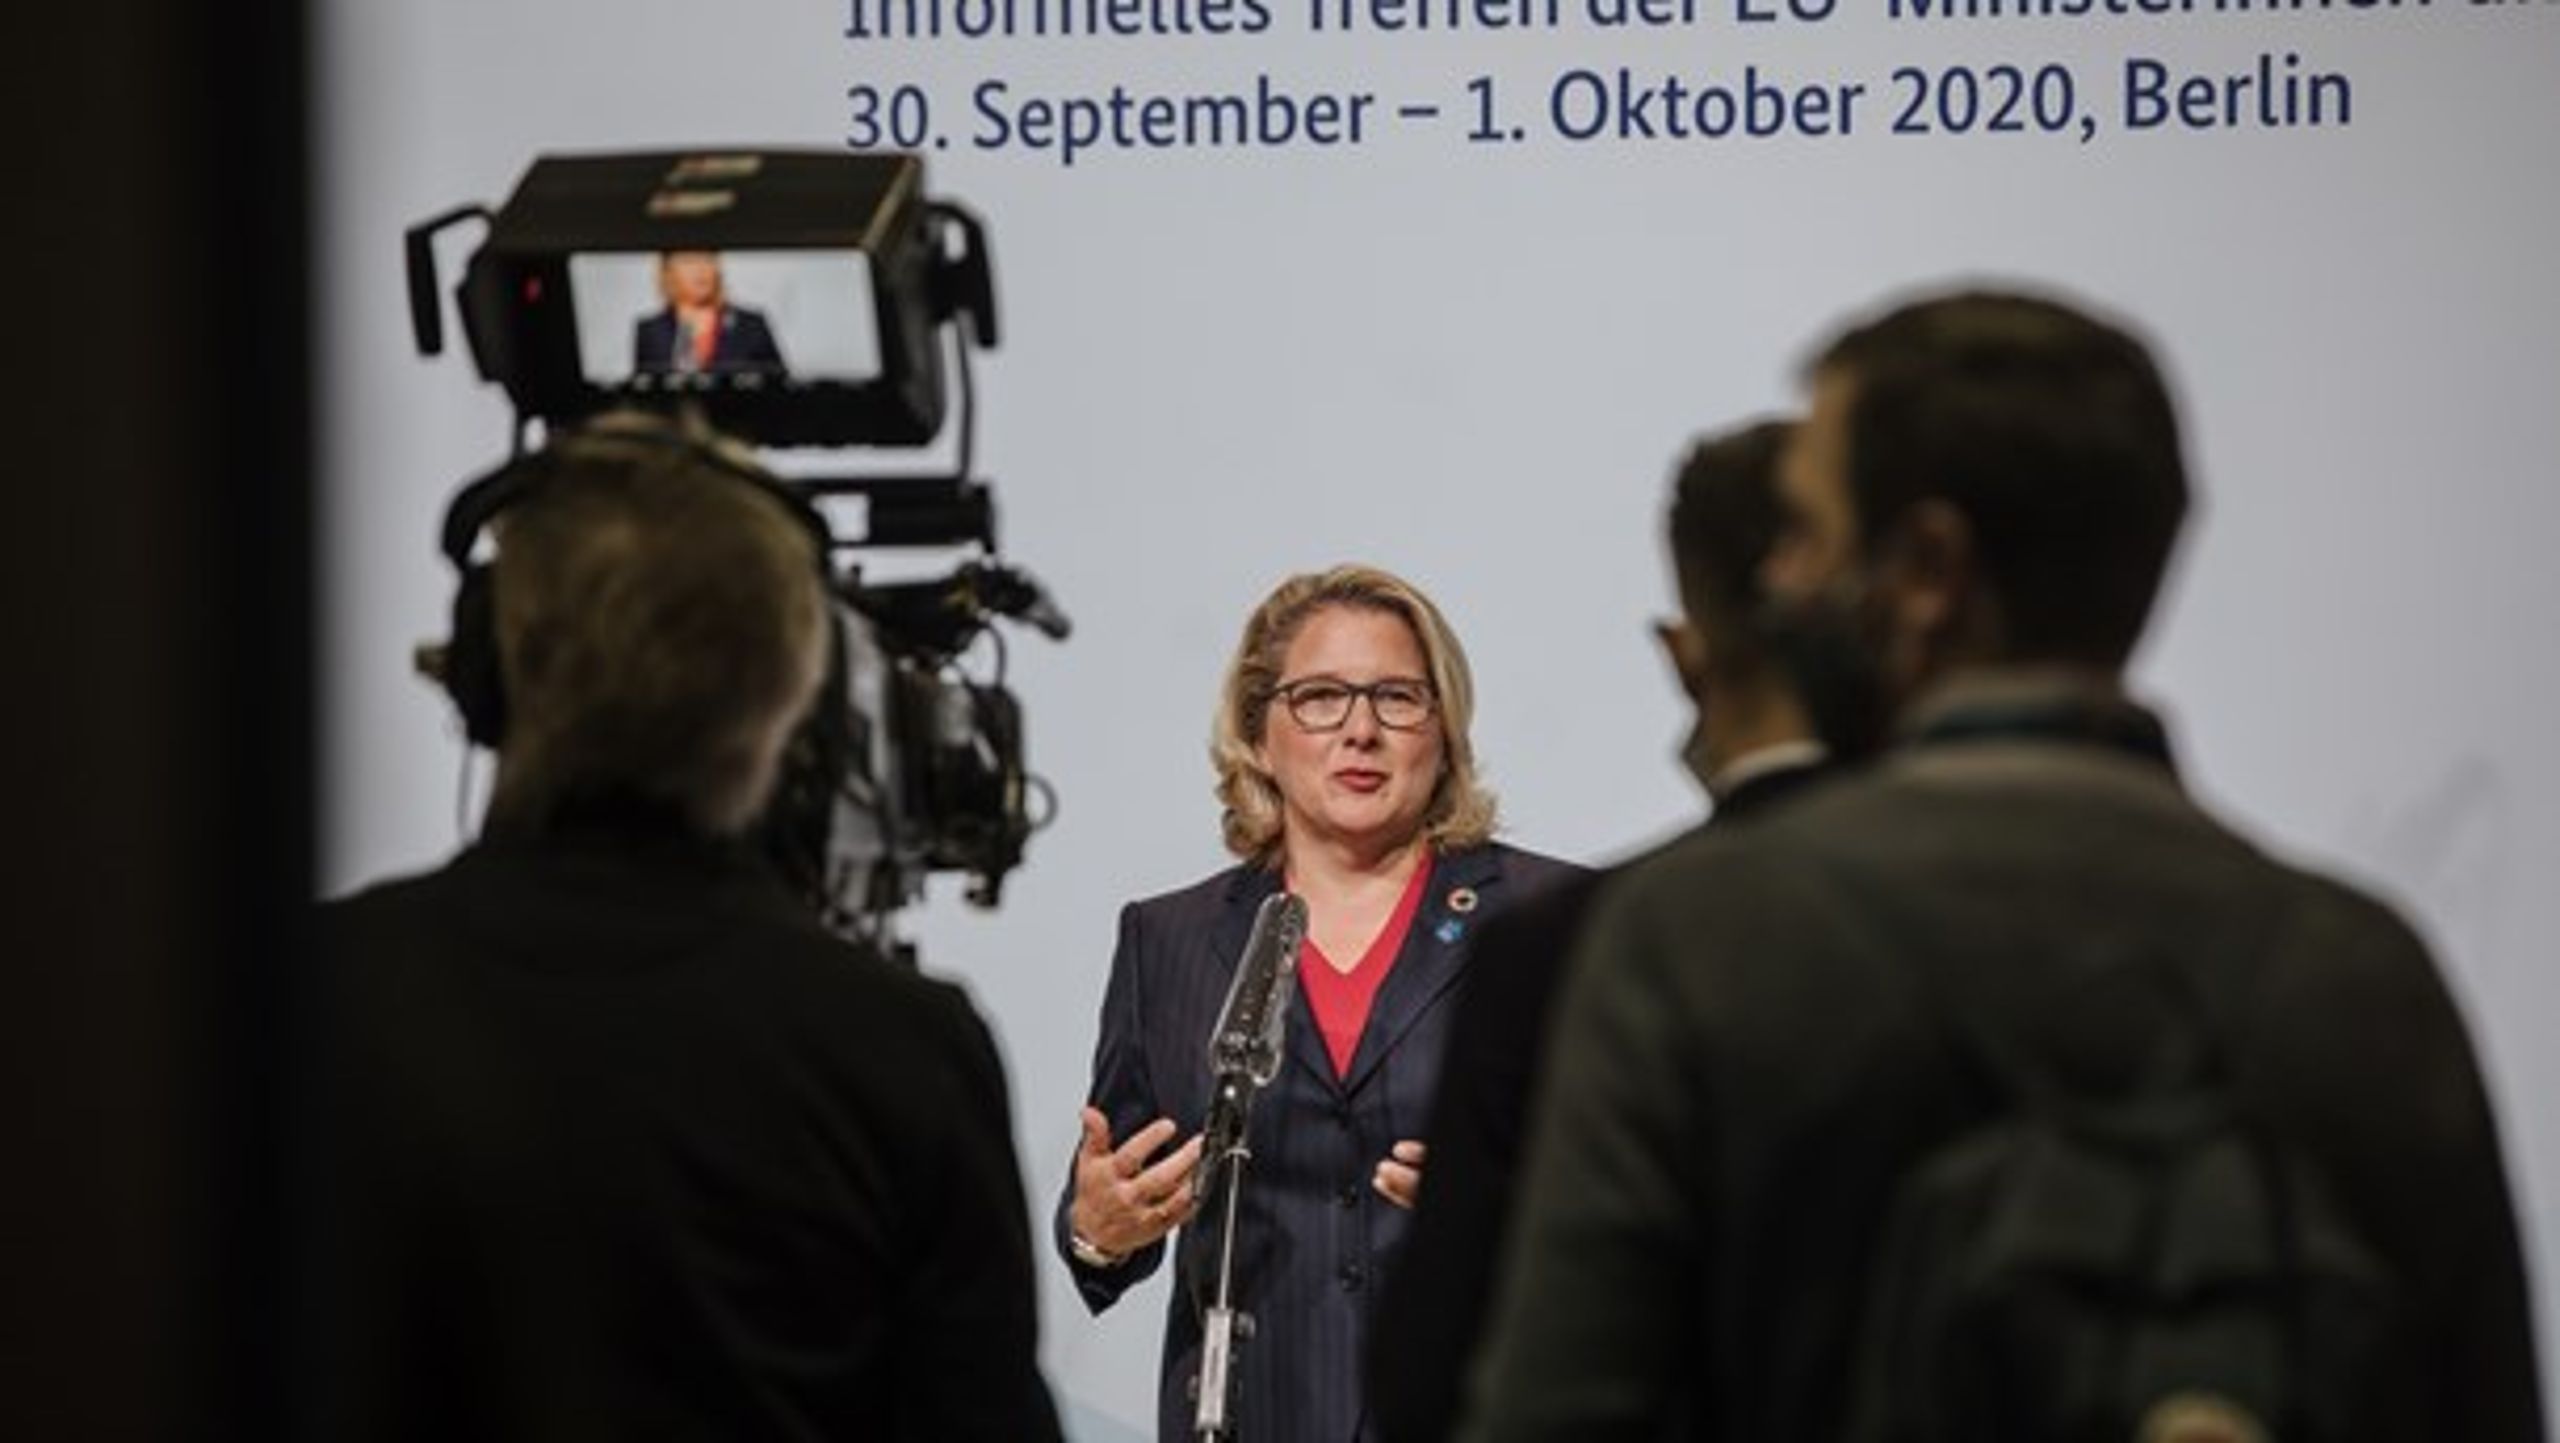 Tyska miljöministern Svenja Schulze höll i förra veckan informella förhandlingar om hur unionen ska anta ett högre 2030-mål med sina kollegor. <br>